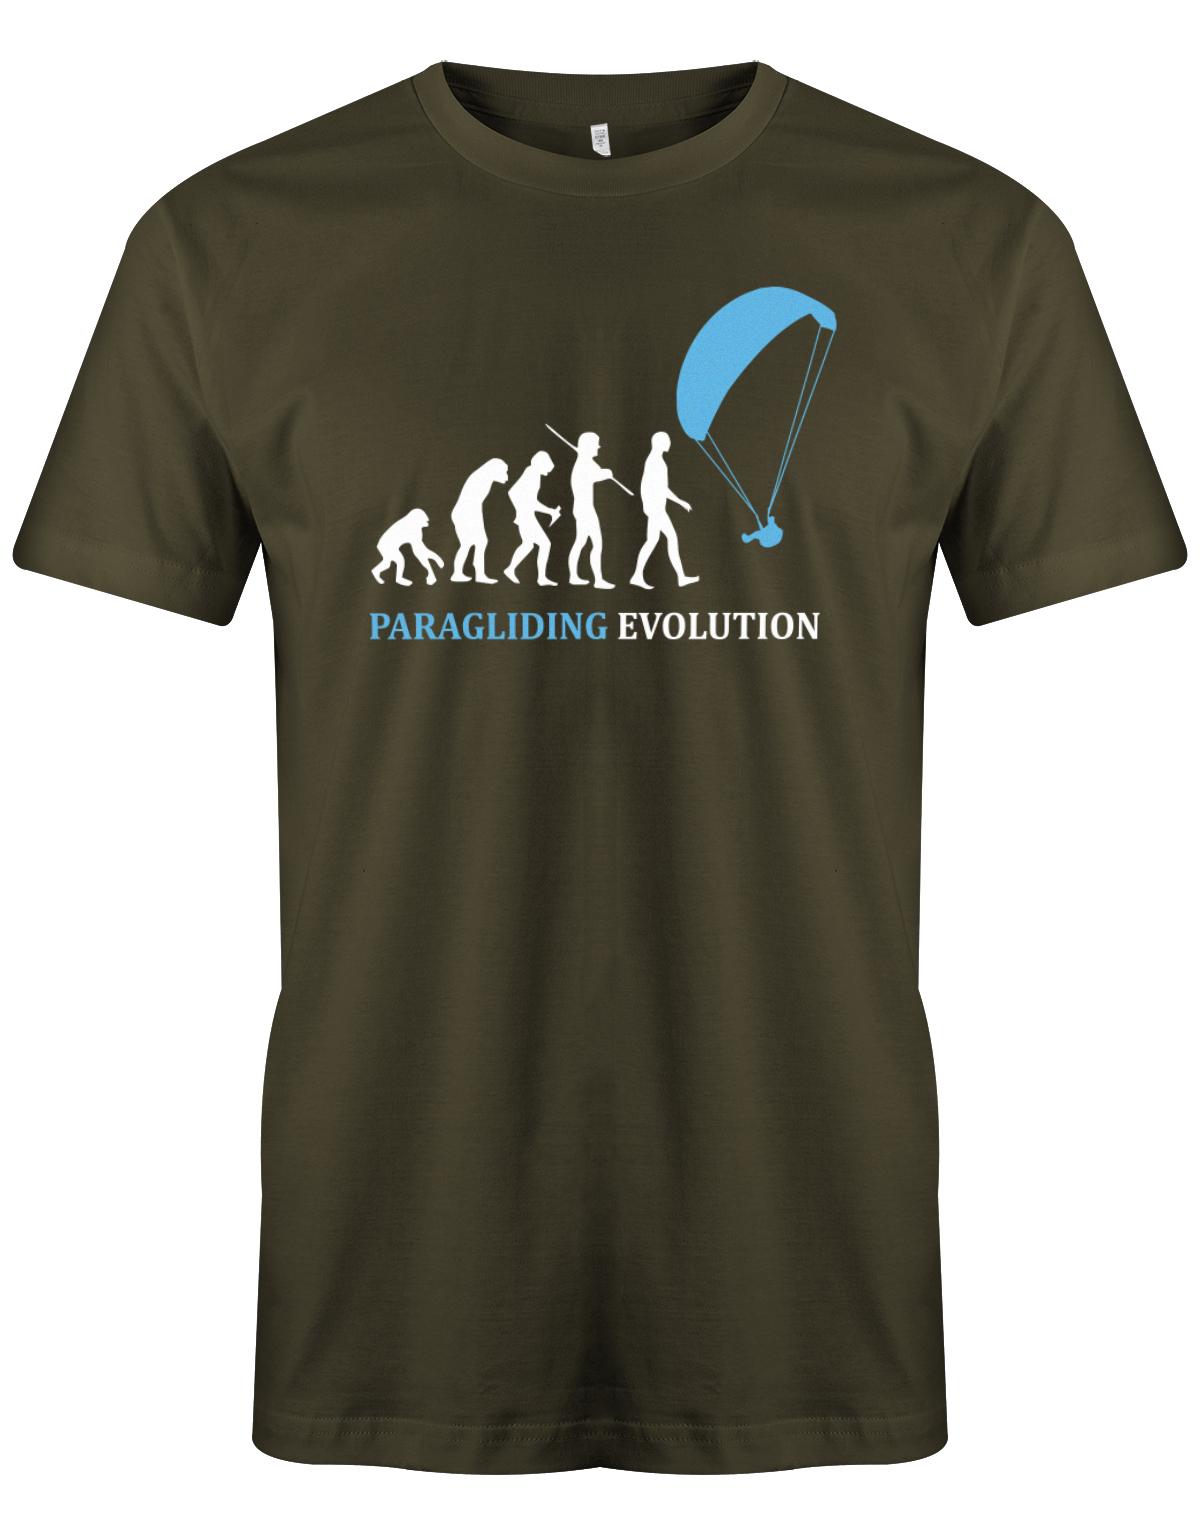 Paragliding-Evolution-herren-Shirt-Army